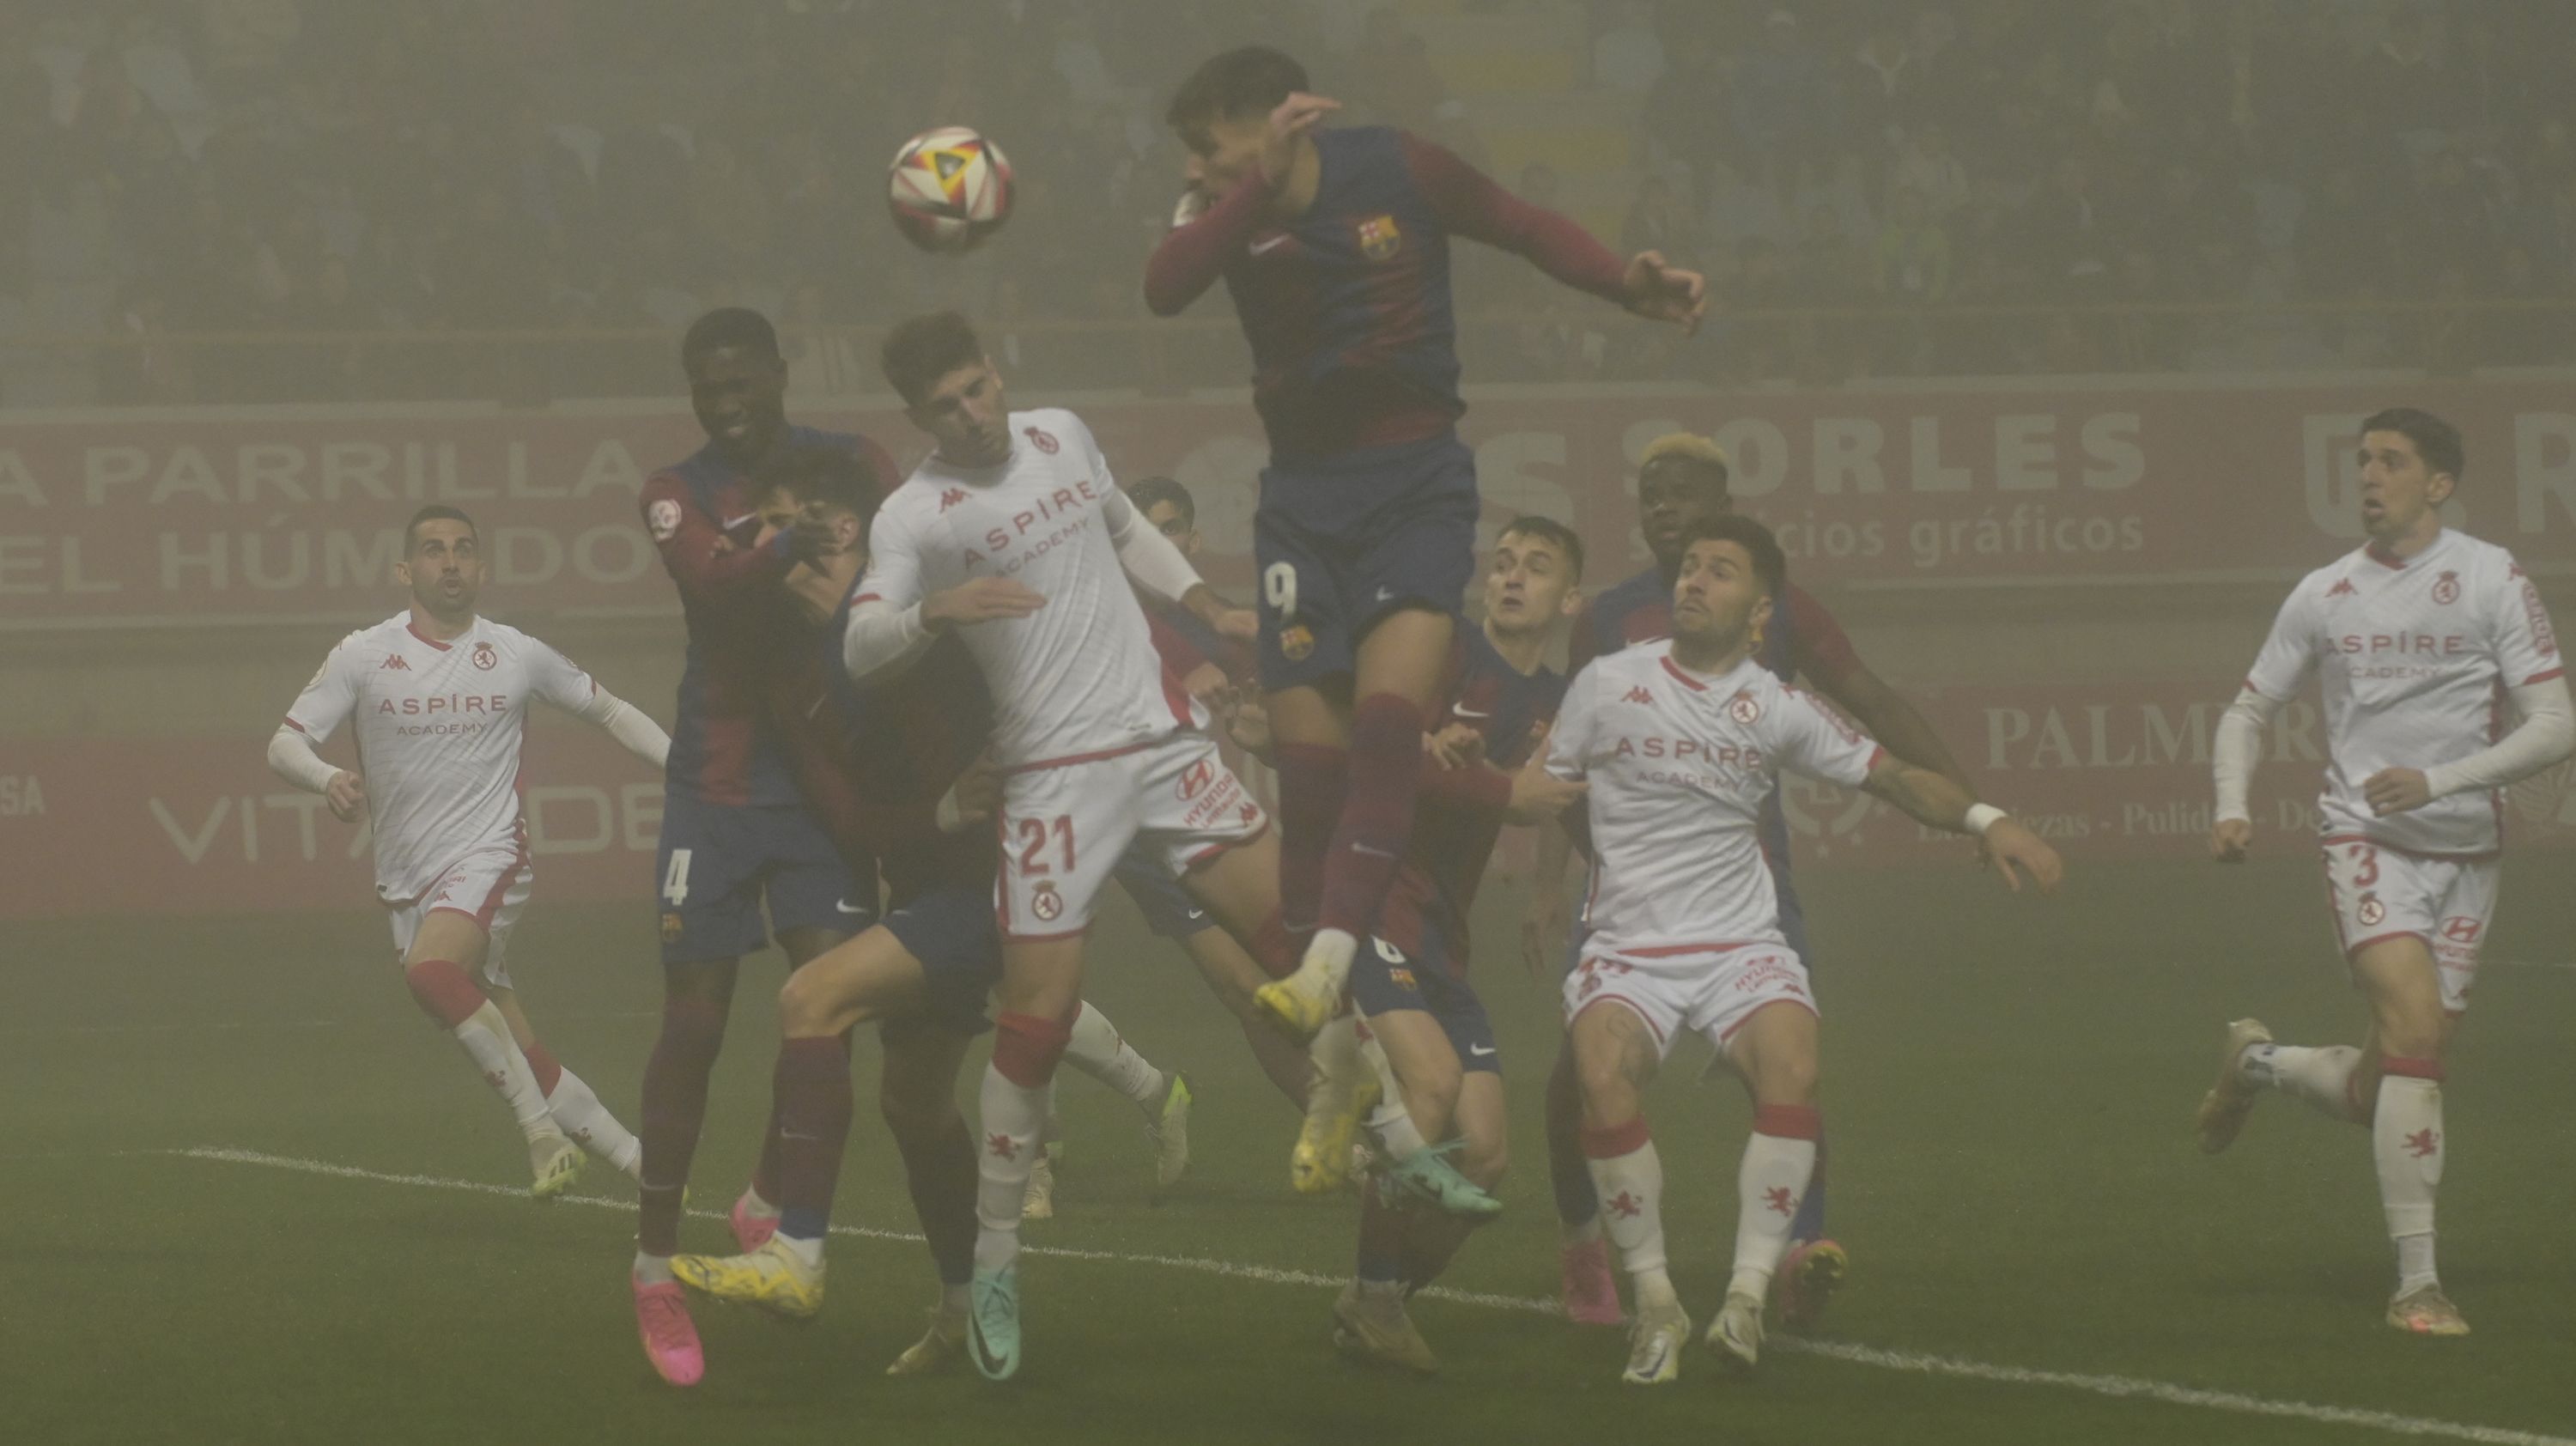 Percan cabecea durante el partido con el Barcelona B en el Reino de León. | MAURICIO PEÑA